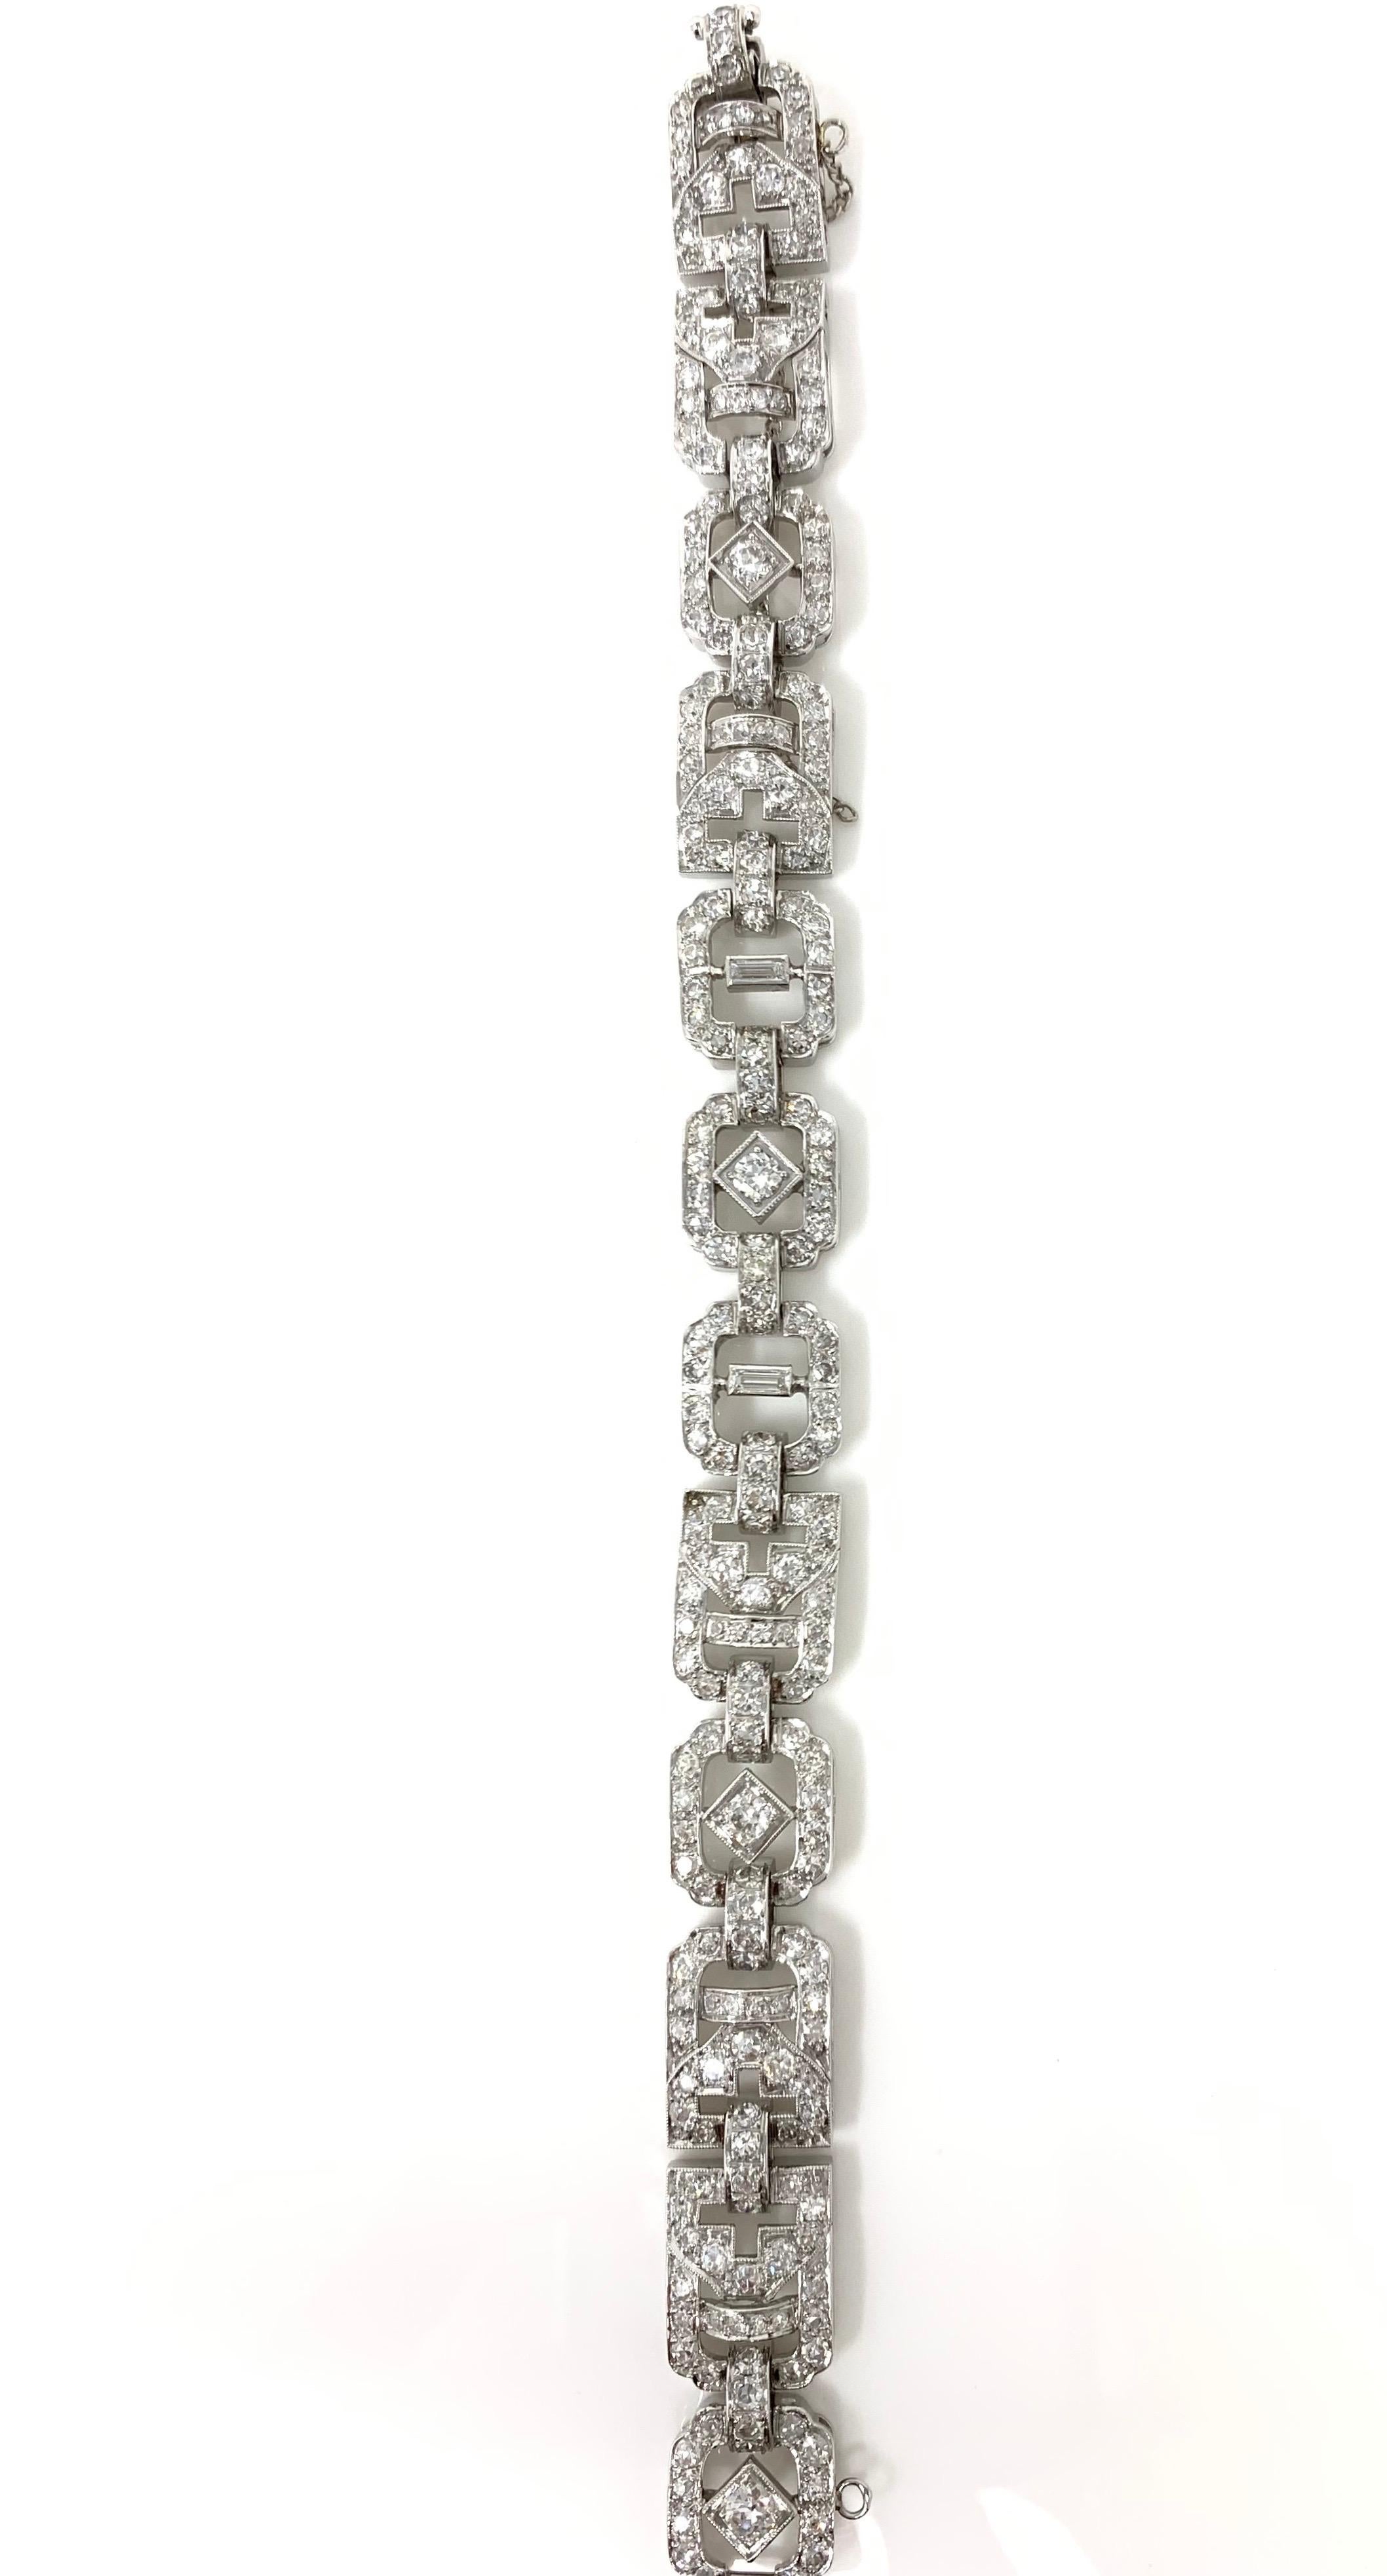 1930 Antique 9 Carat White Diamond Bracelet in Platinum For Sale 1